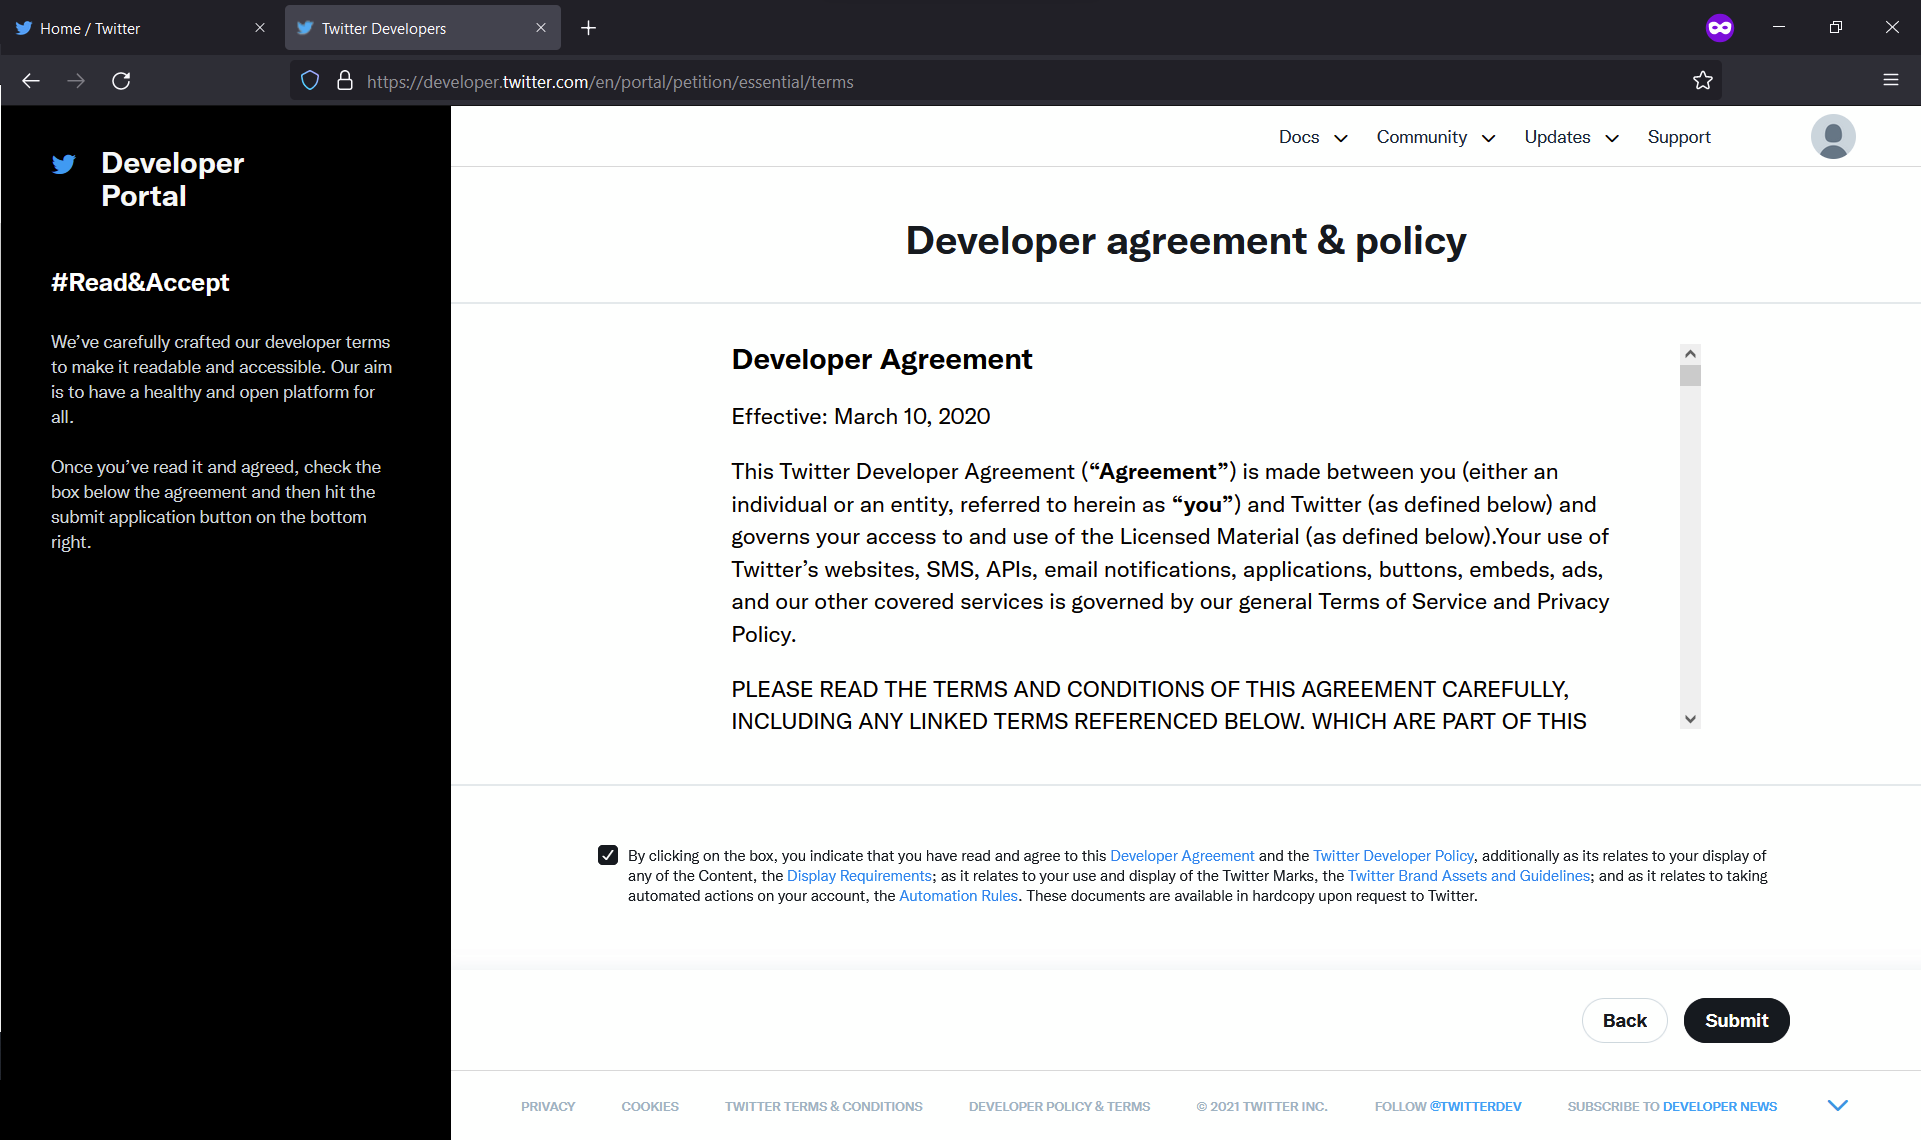 The Twitter Developer Agreement